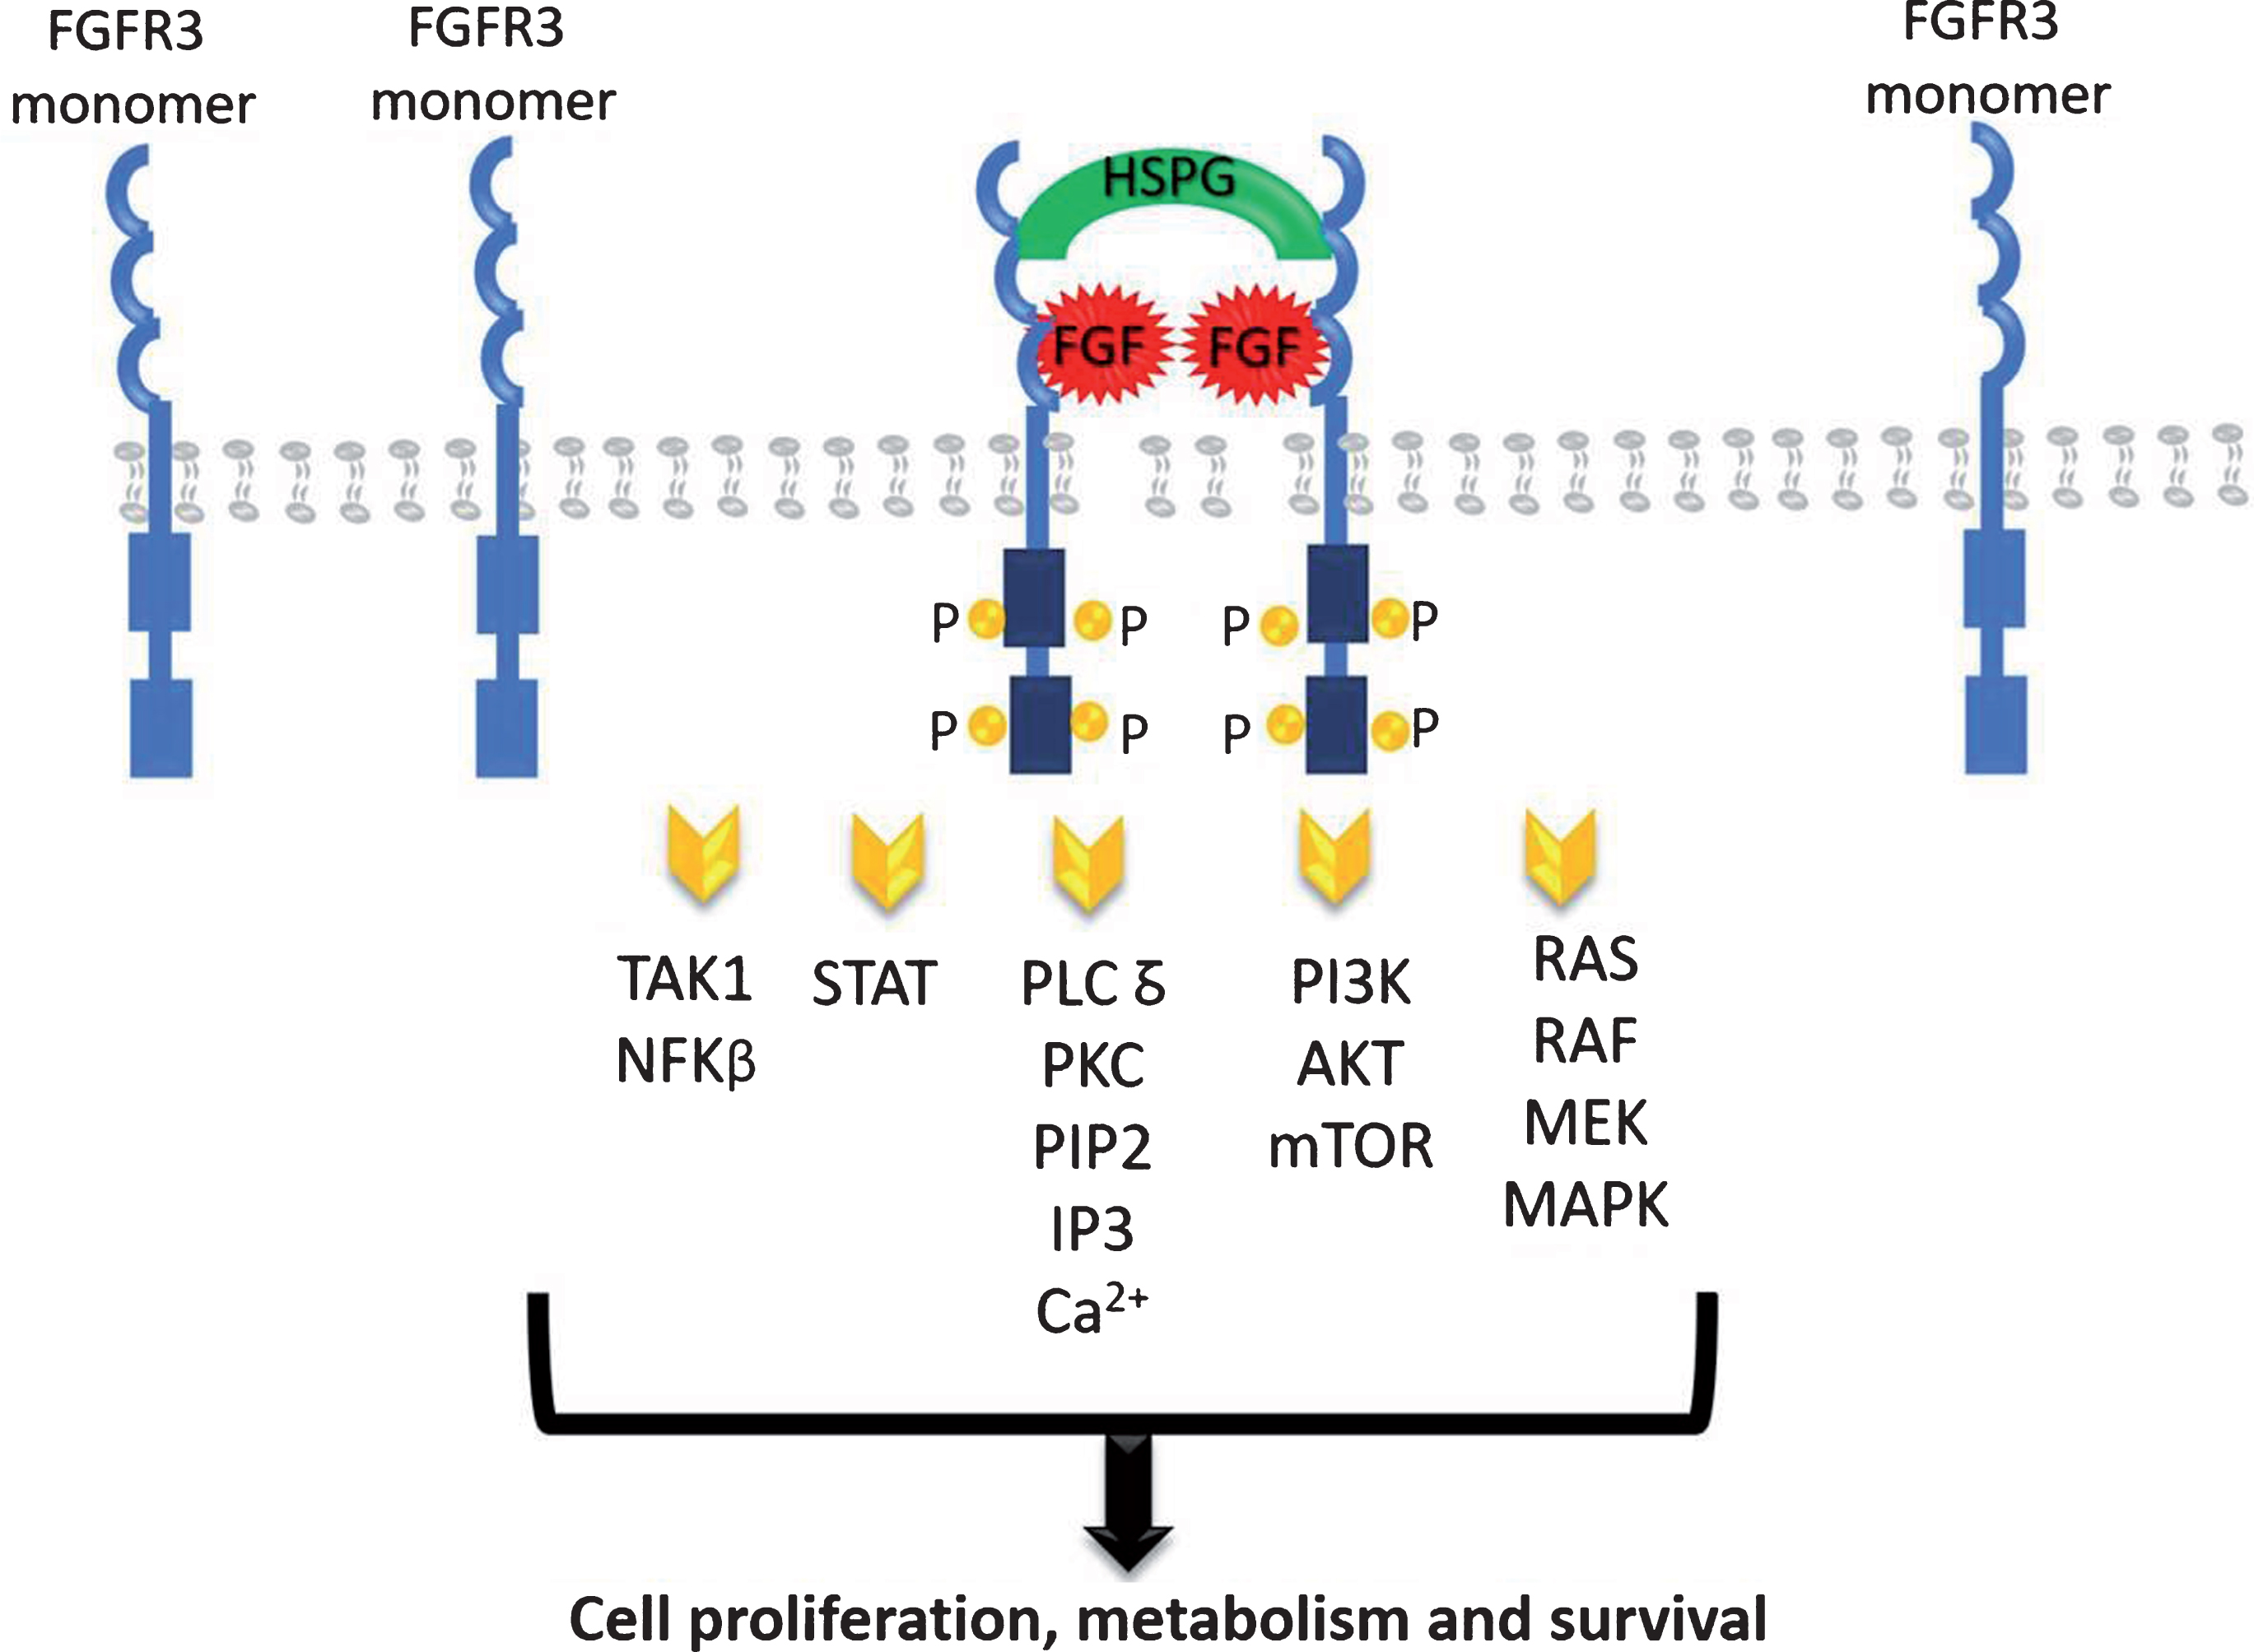 FGFR signaling pathways.